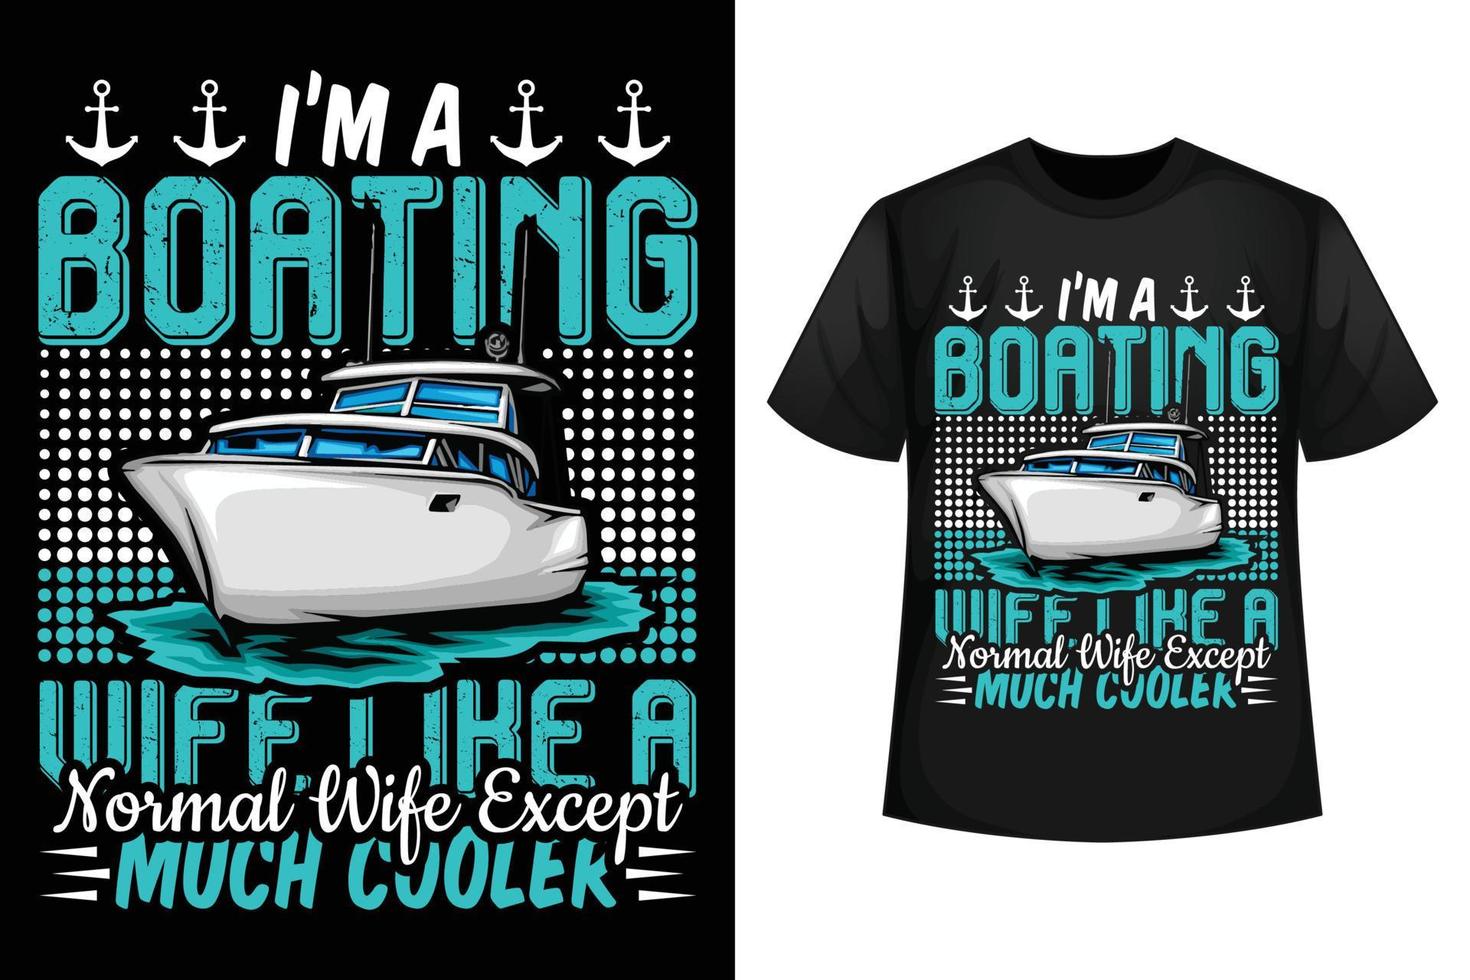 jag är en segling fru tycka om en vanligt fru bortsett från mycket kylare - segling t-shirt design mall vektor